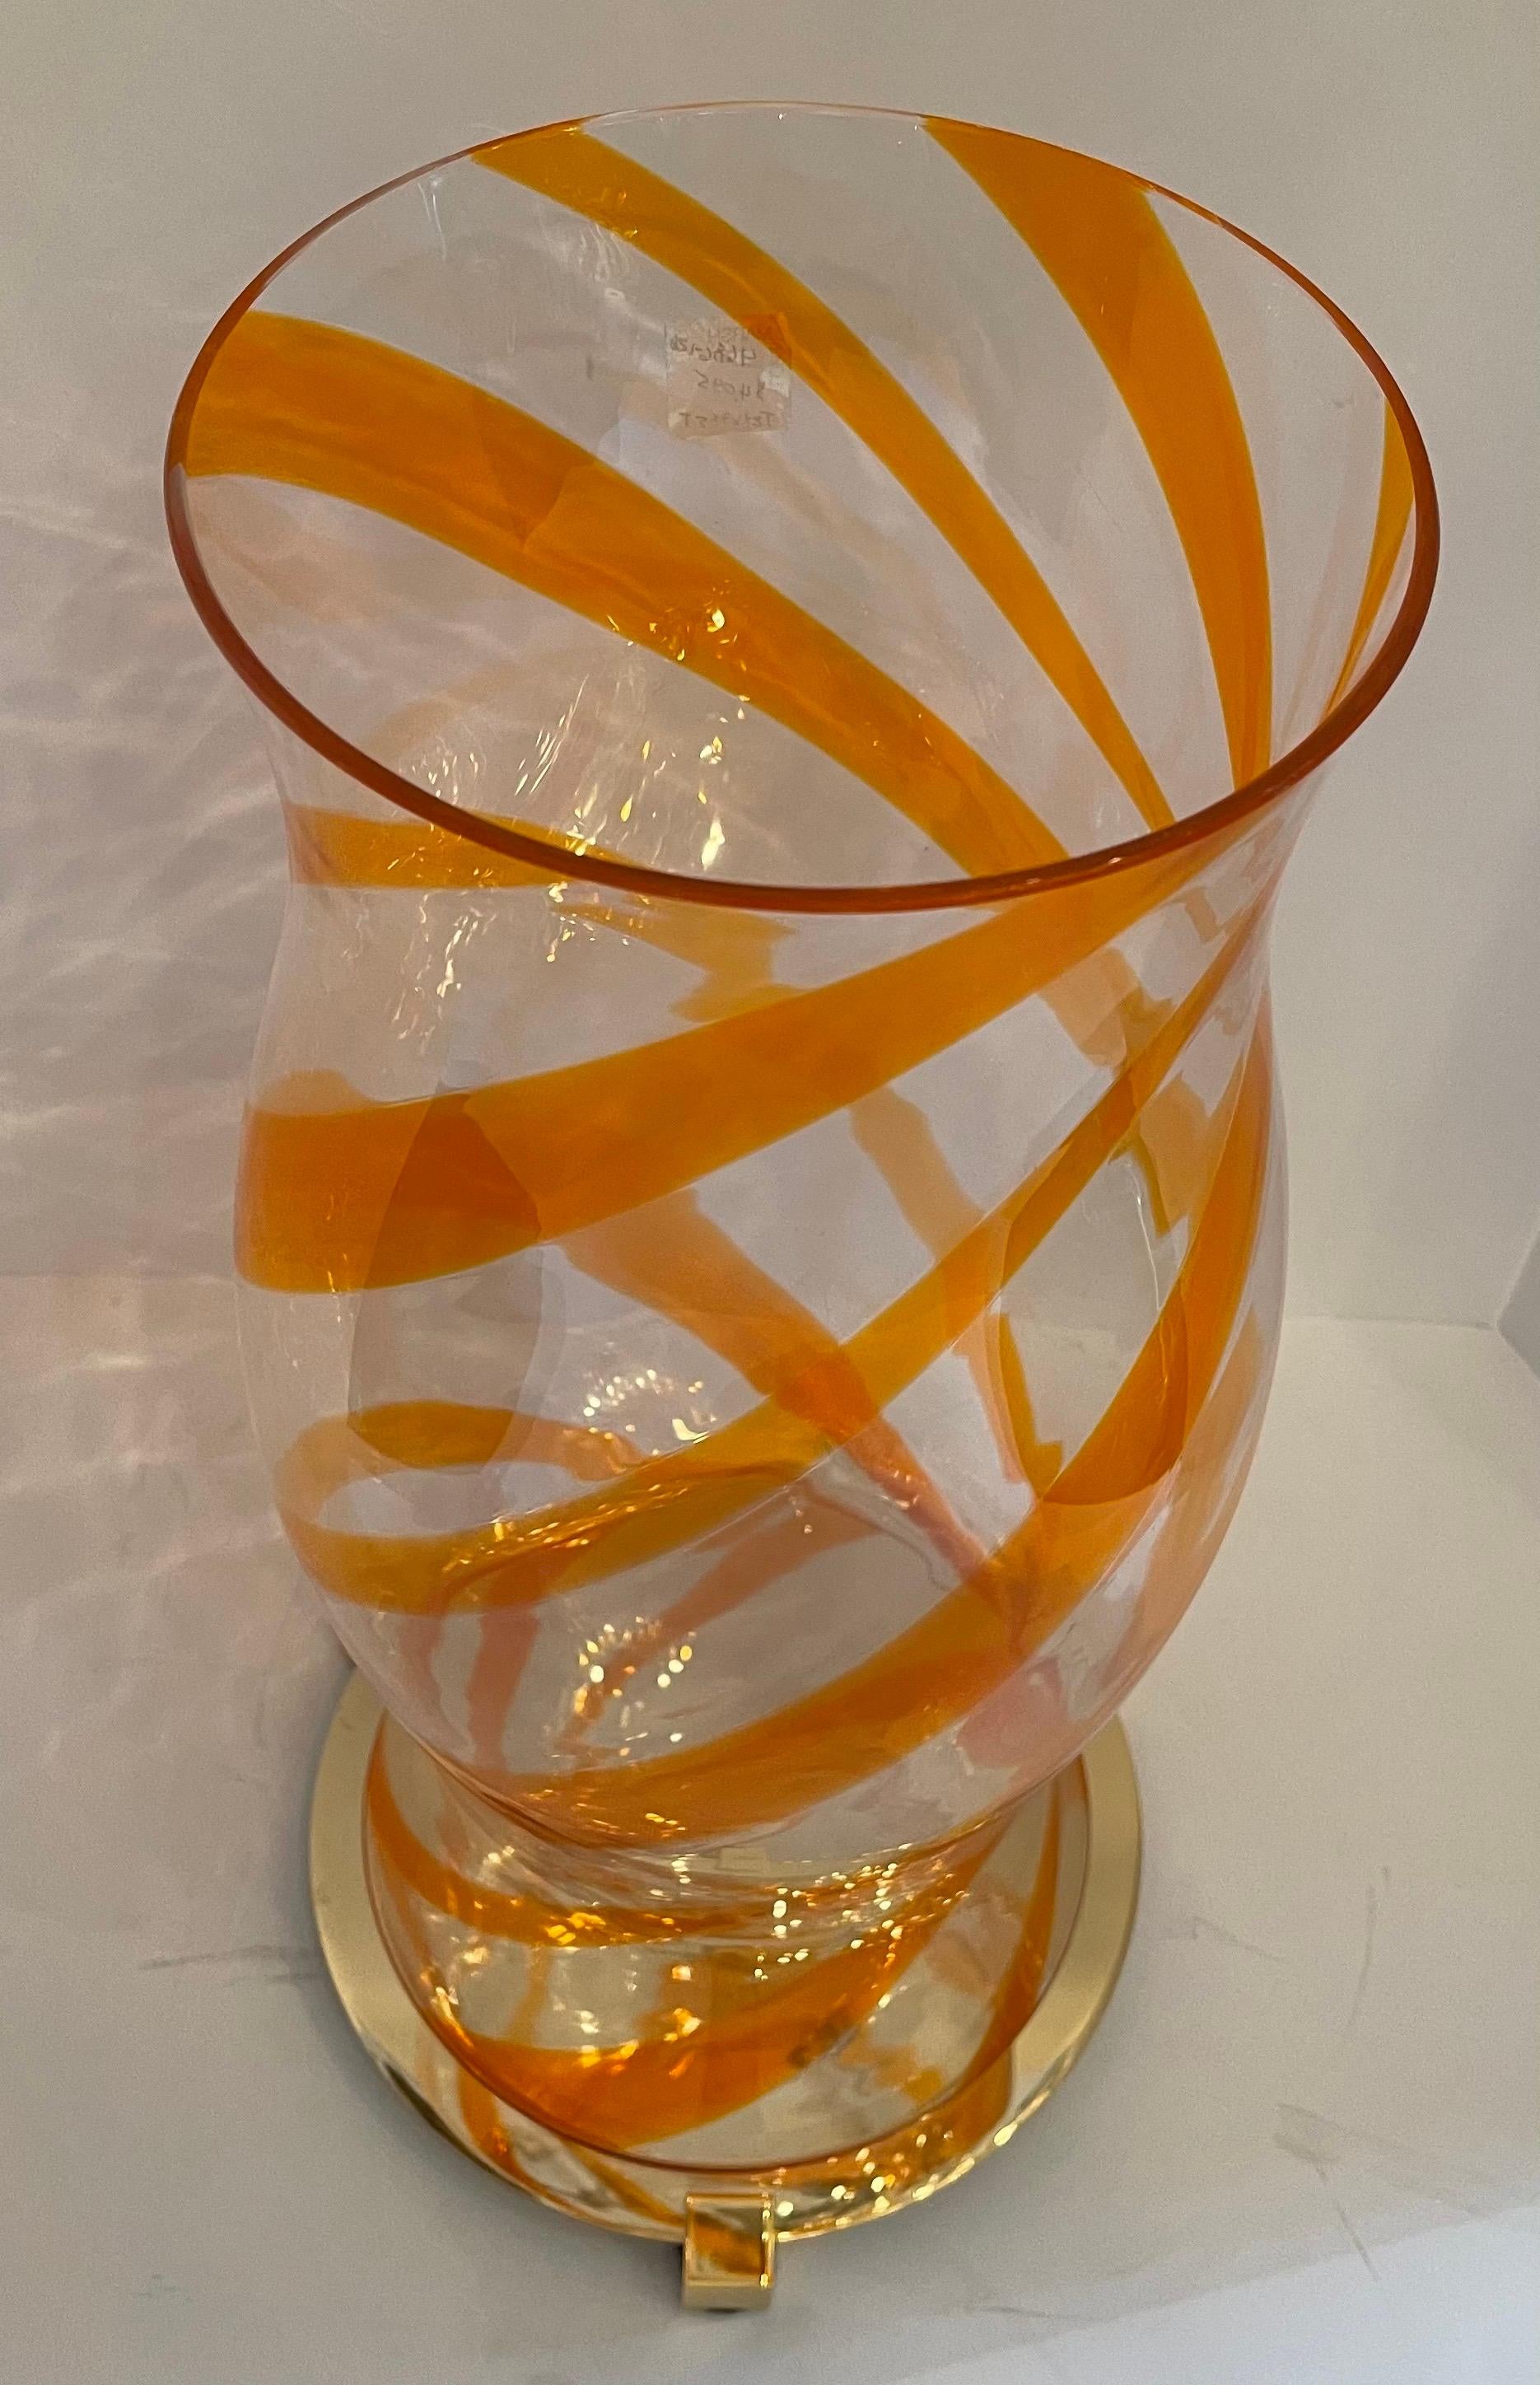 Un magnifique grand abat-jour en verre d'art soufflé à la main Lorin Marsh en forme de tourbillon orange de Murano, datant du milieu du siècle dernier, posé sur une base en laiton poli

Conserve l'original. Autocollant Lorin Marsh avec un prix de